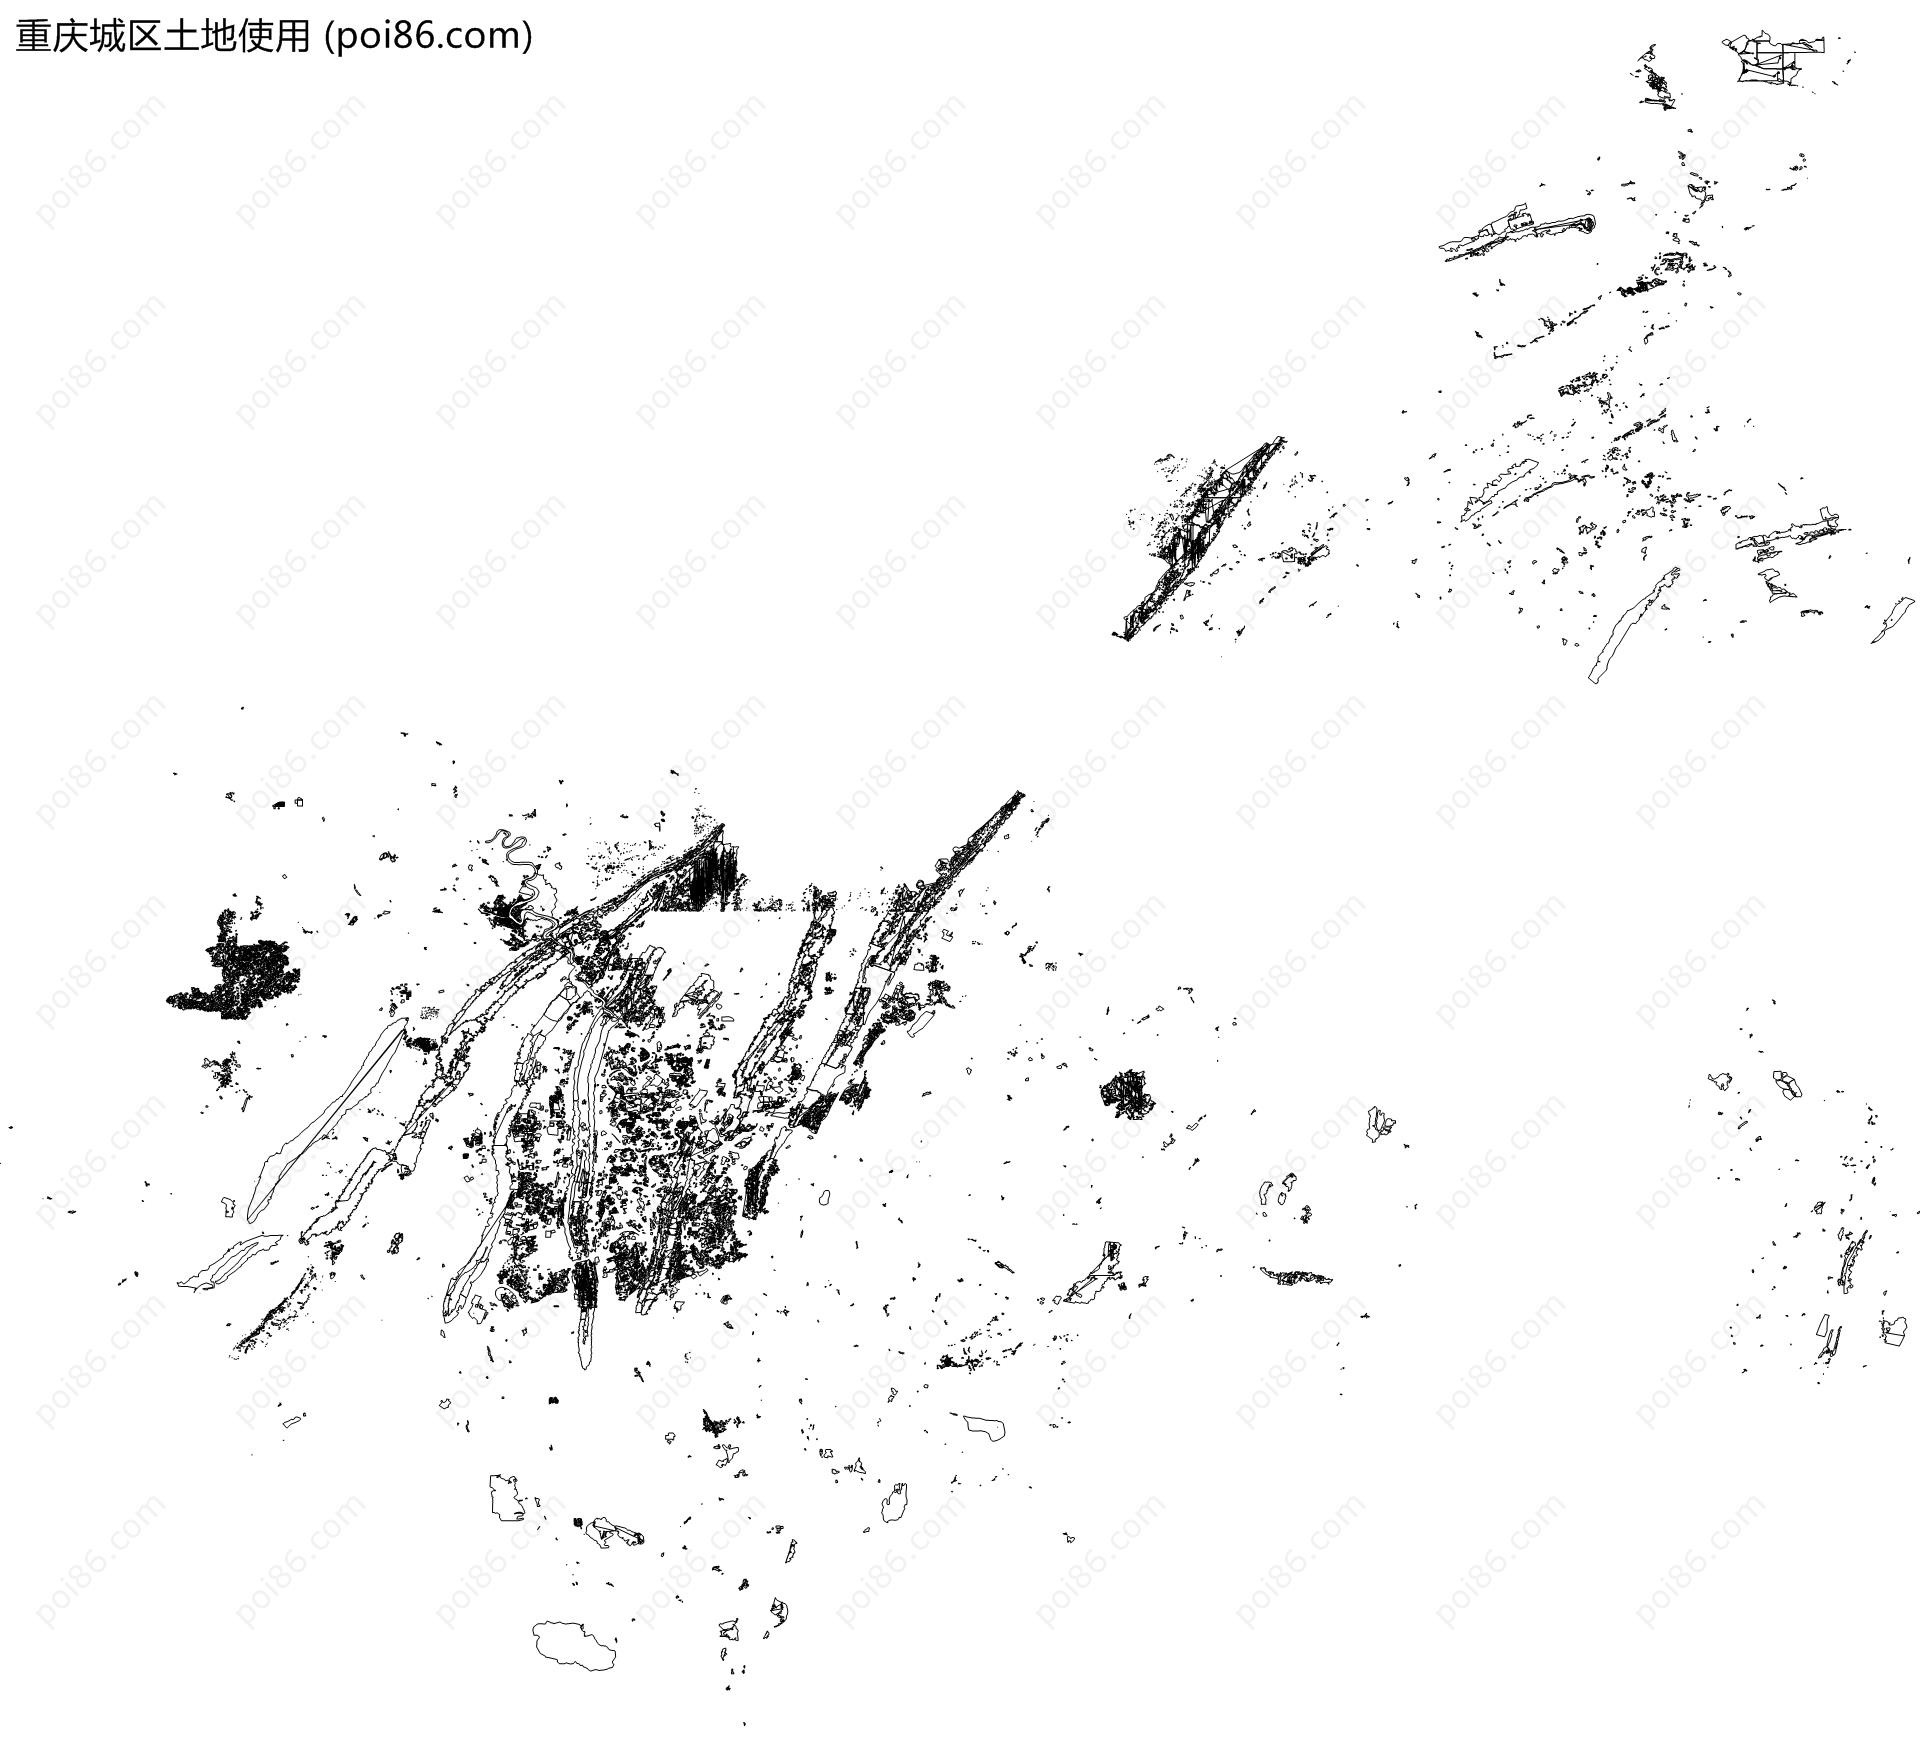 重庆城区土地使用地图